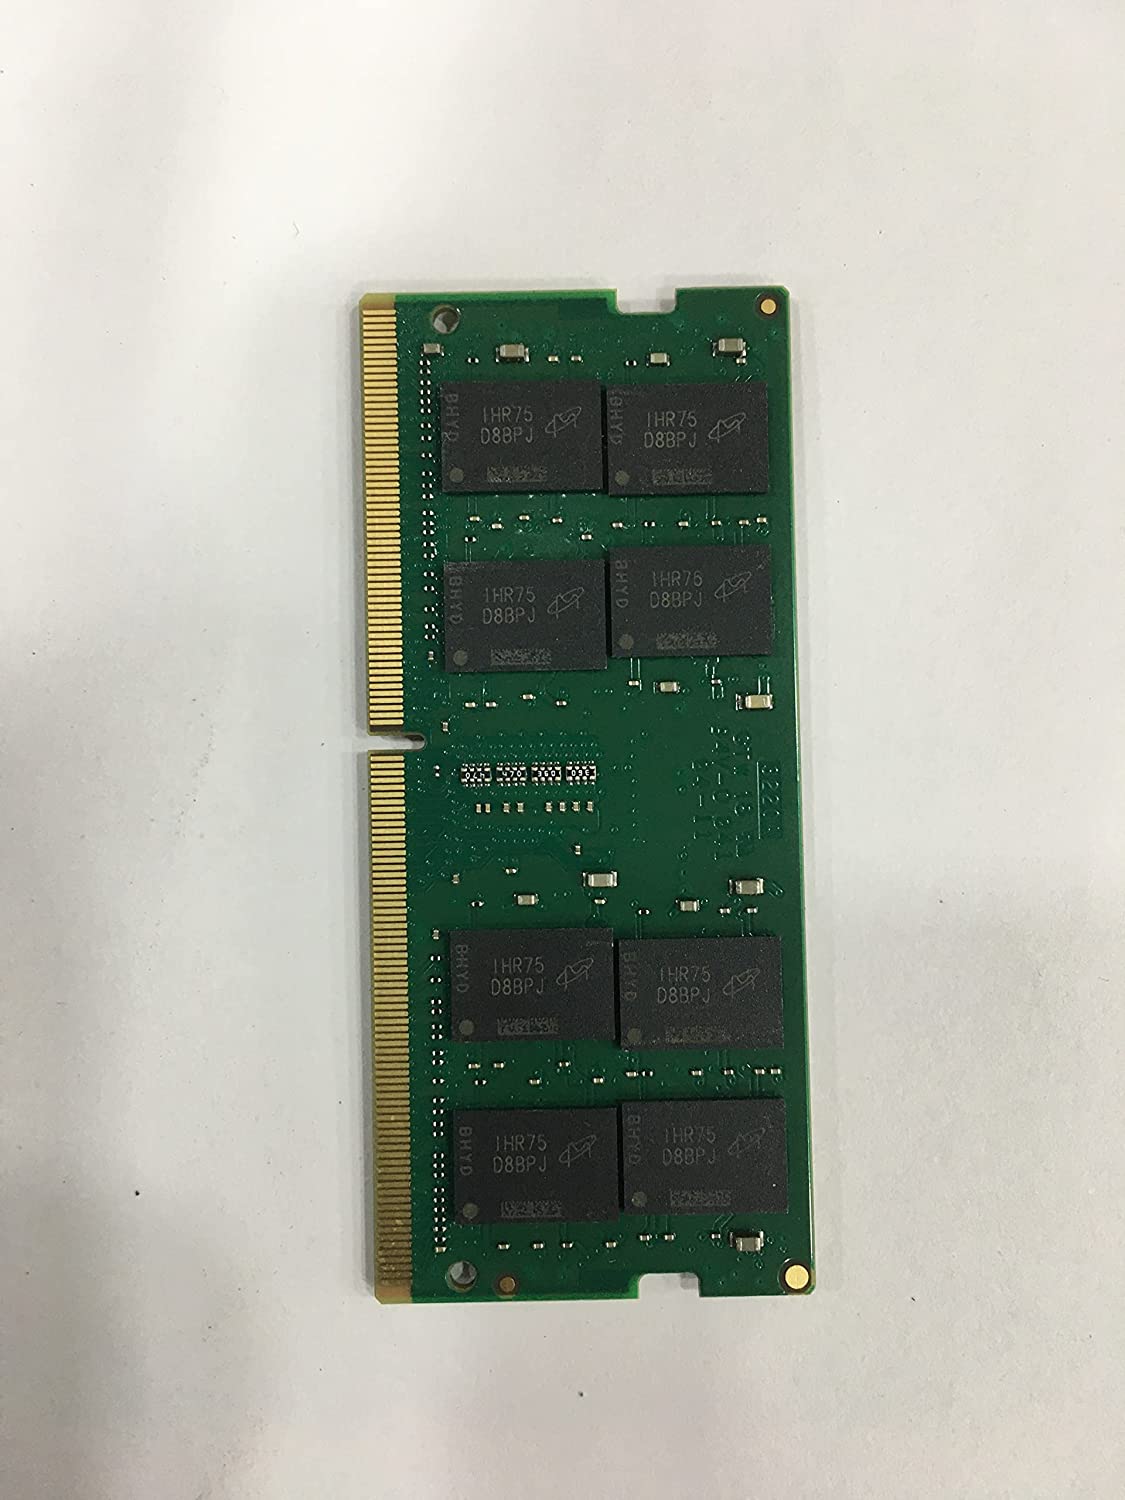 Crucial RAM 16Go DDR4 3200MHz CL22 (ou 2933MHz o…